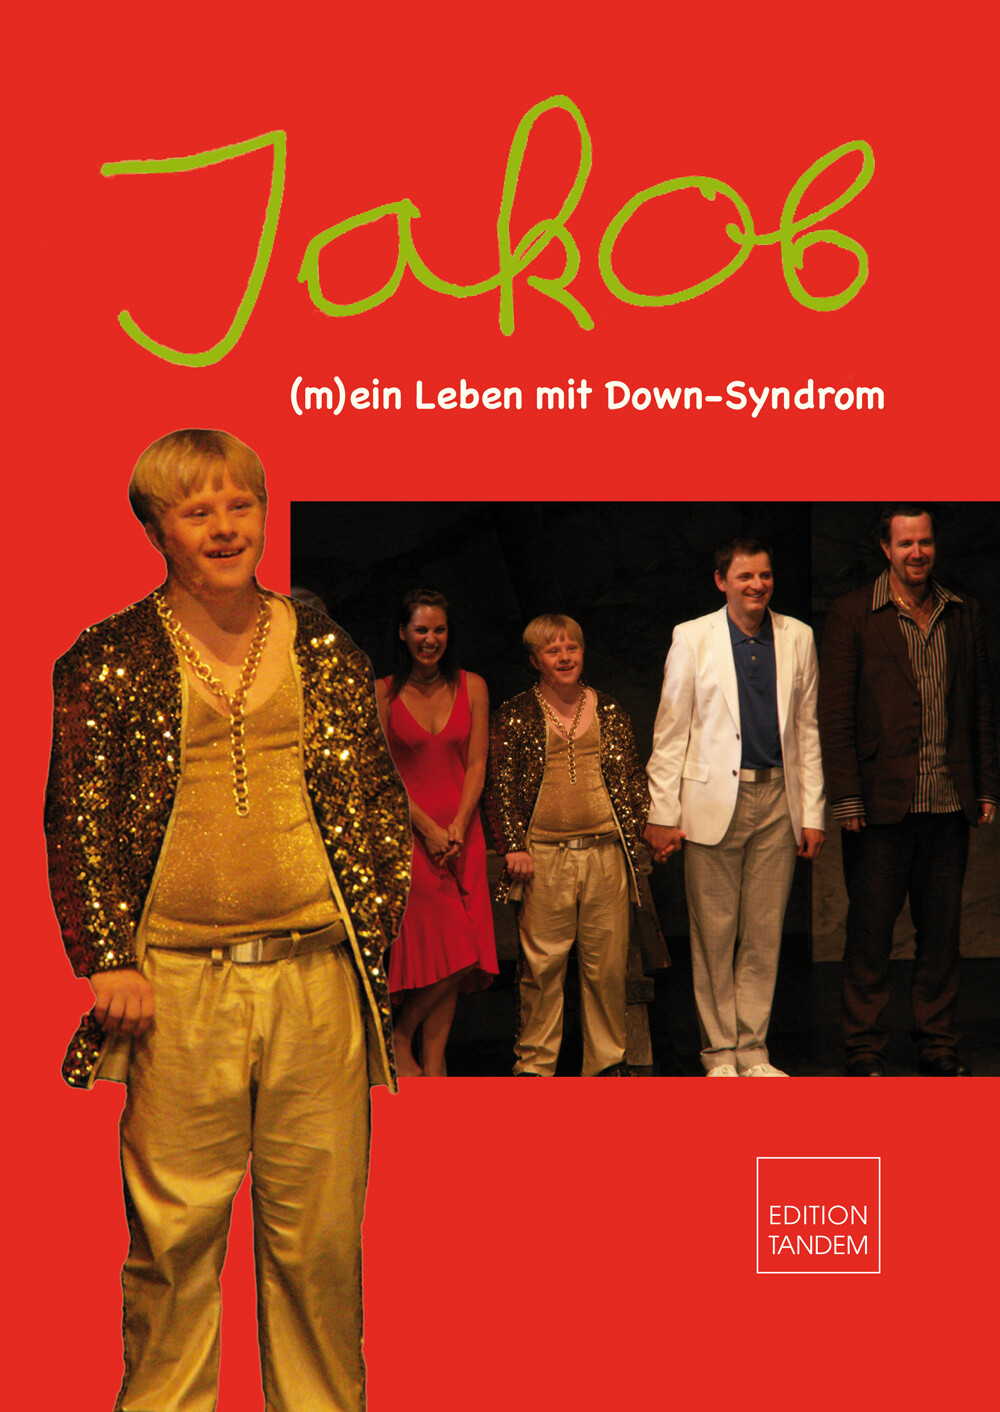 JAKOB - (m)ein Leben mit Down-Syndrom